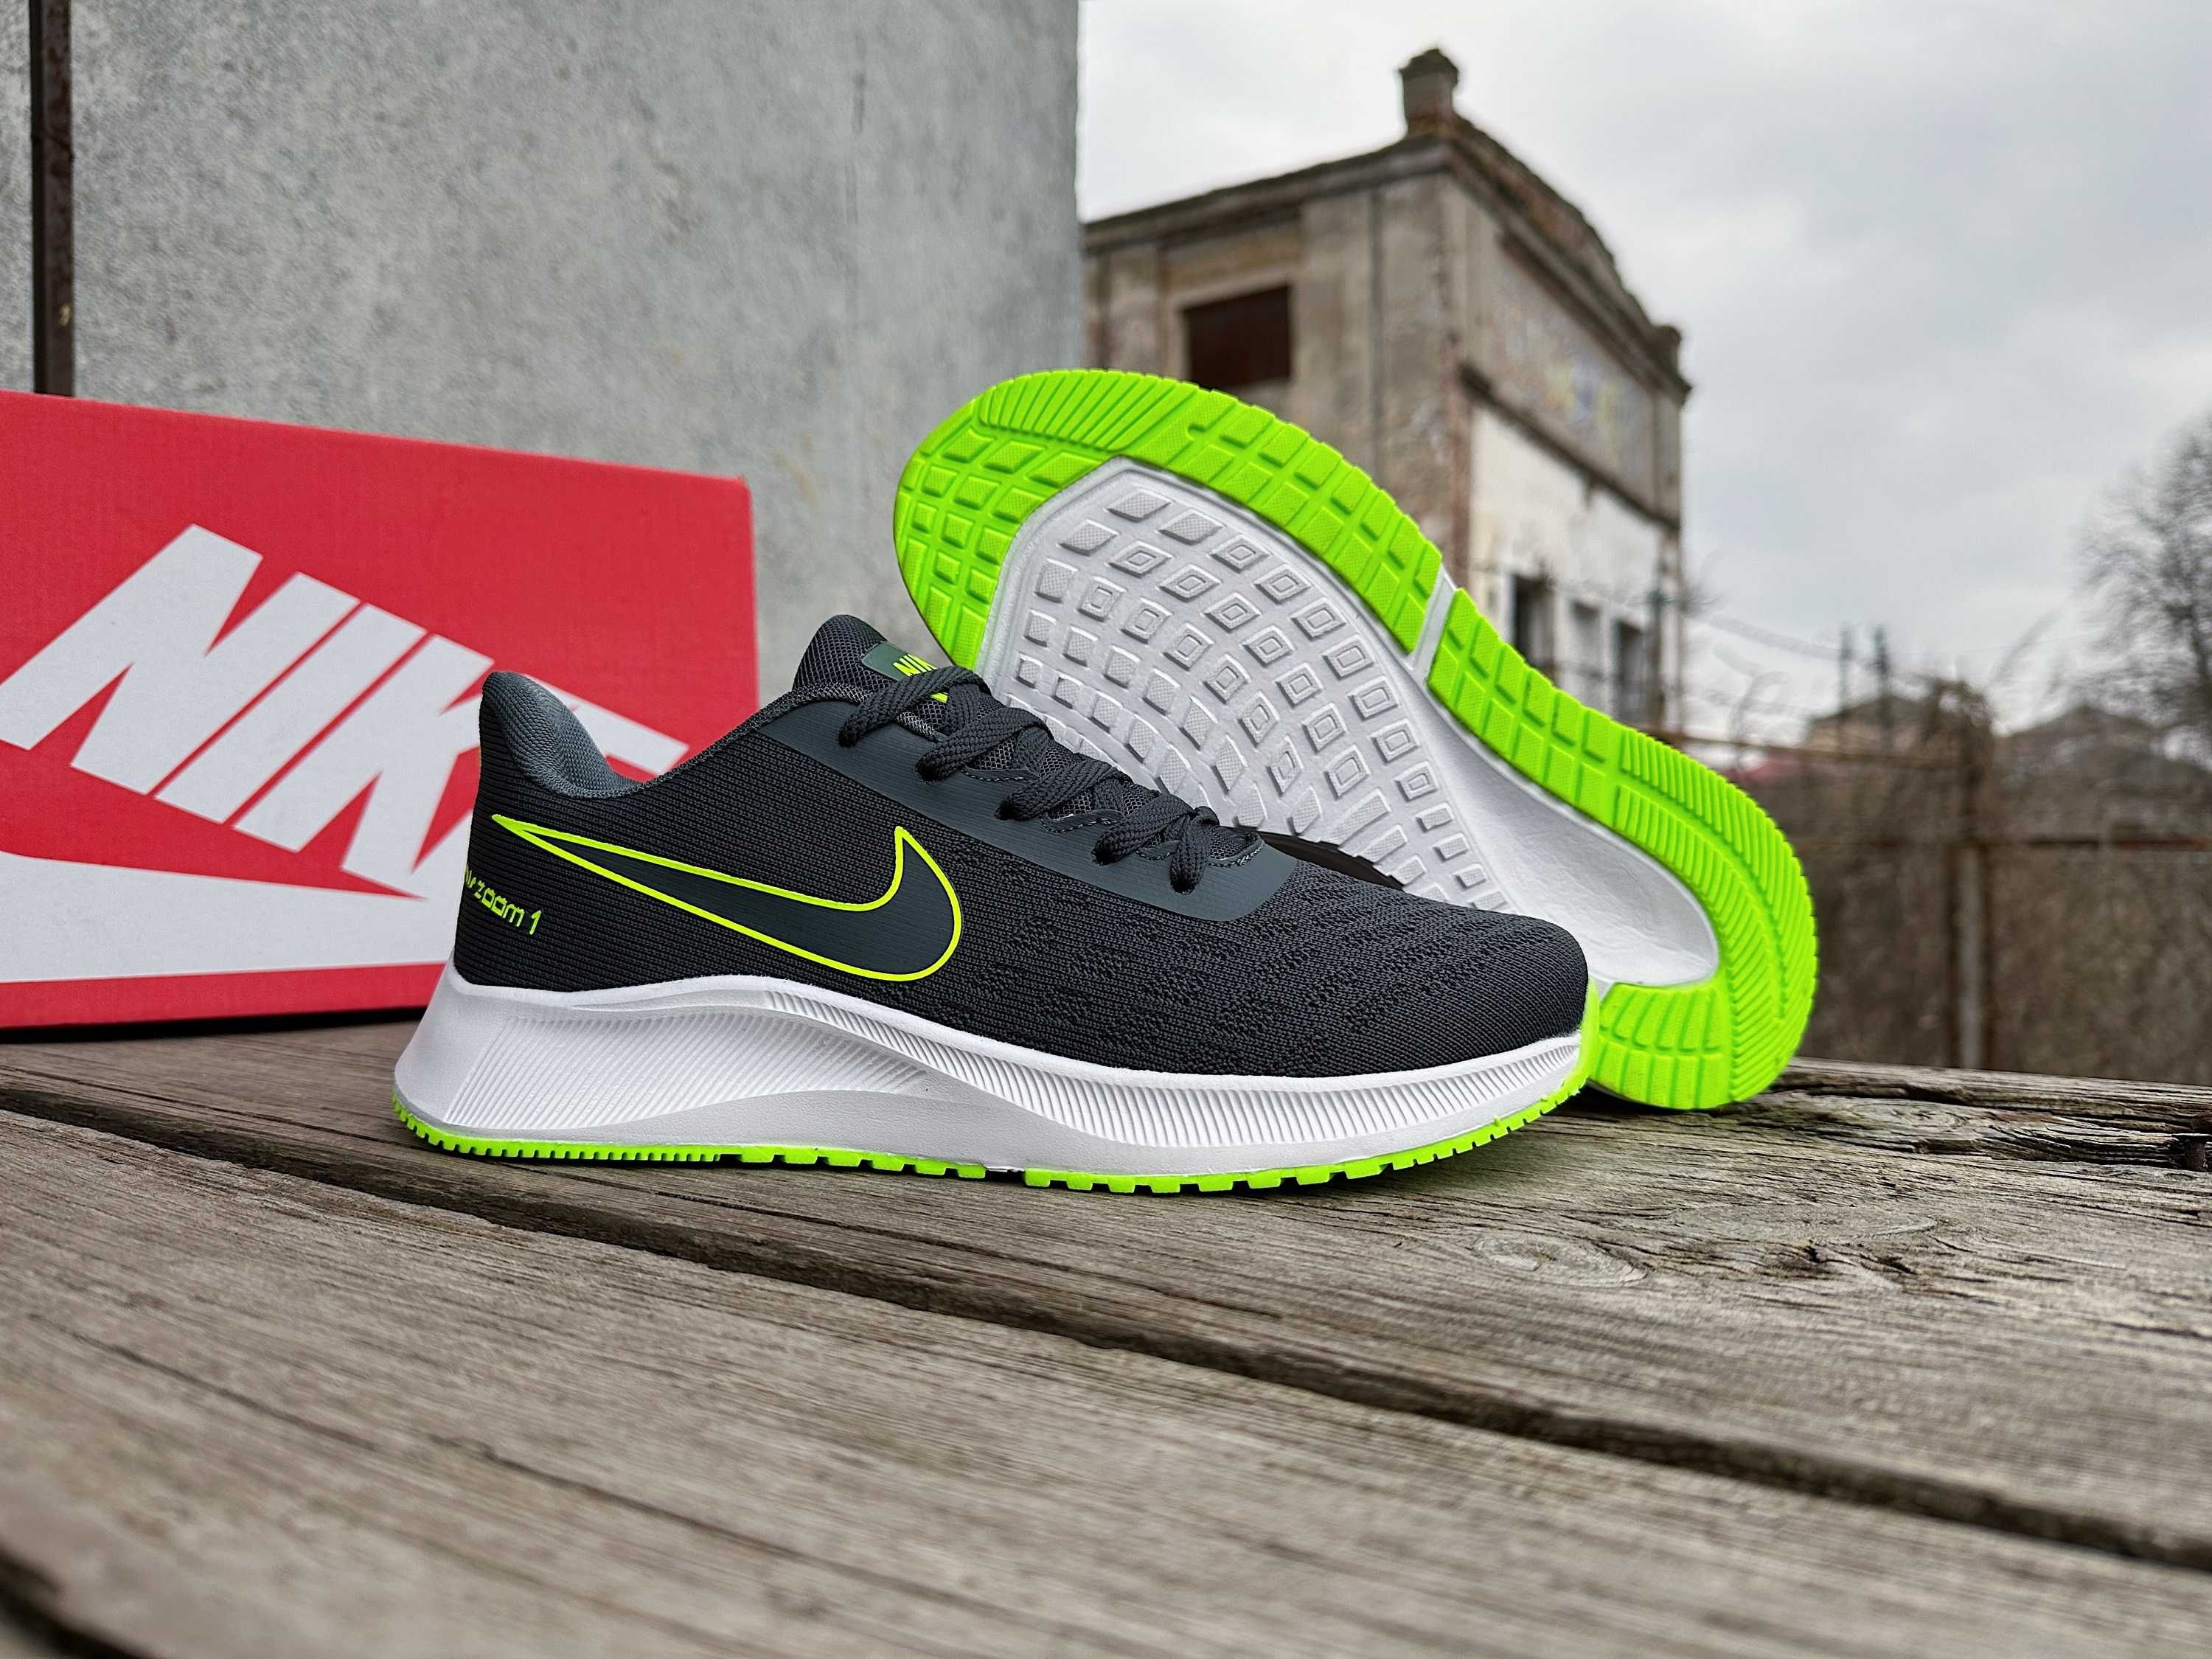 Мужские кроссовки Nike Zoom (4 цвета) размеры 41-46 сетка легкие